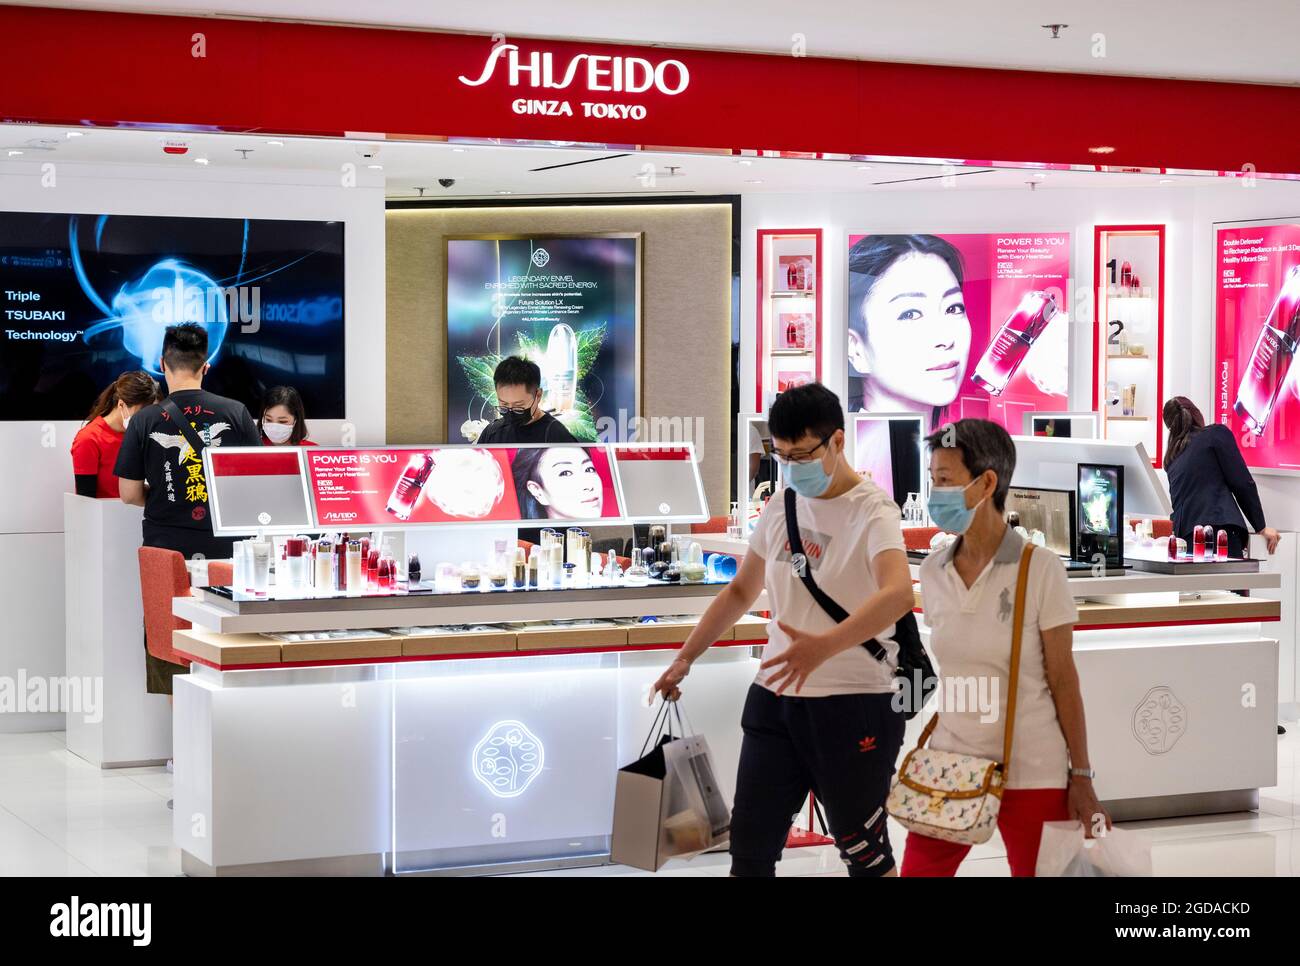 Les amateurs de shopping portant des masques faciaux se promène devant la société multinationale japonaise de soins personnels Shiseido, qui se trouve à Hong Kong. Banque D'Images